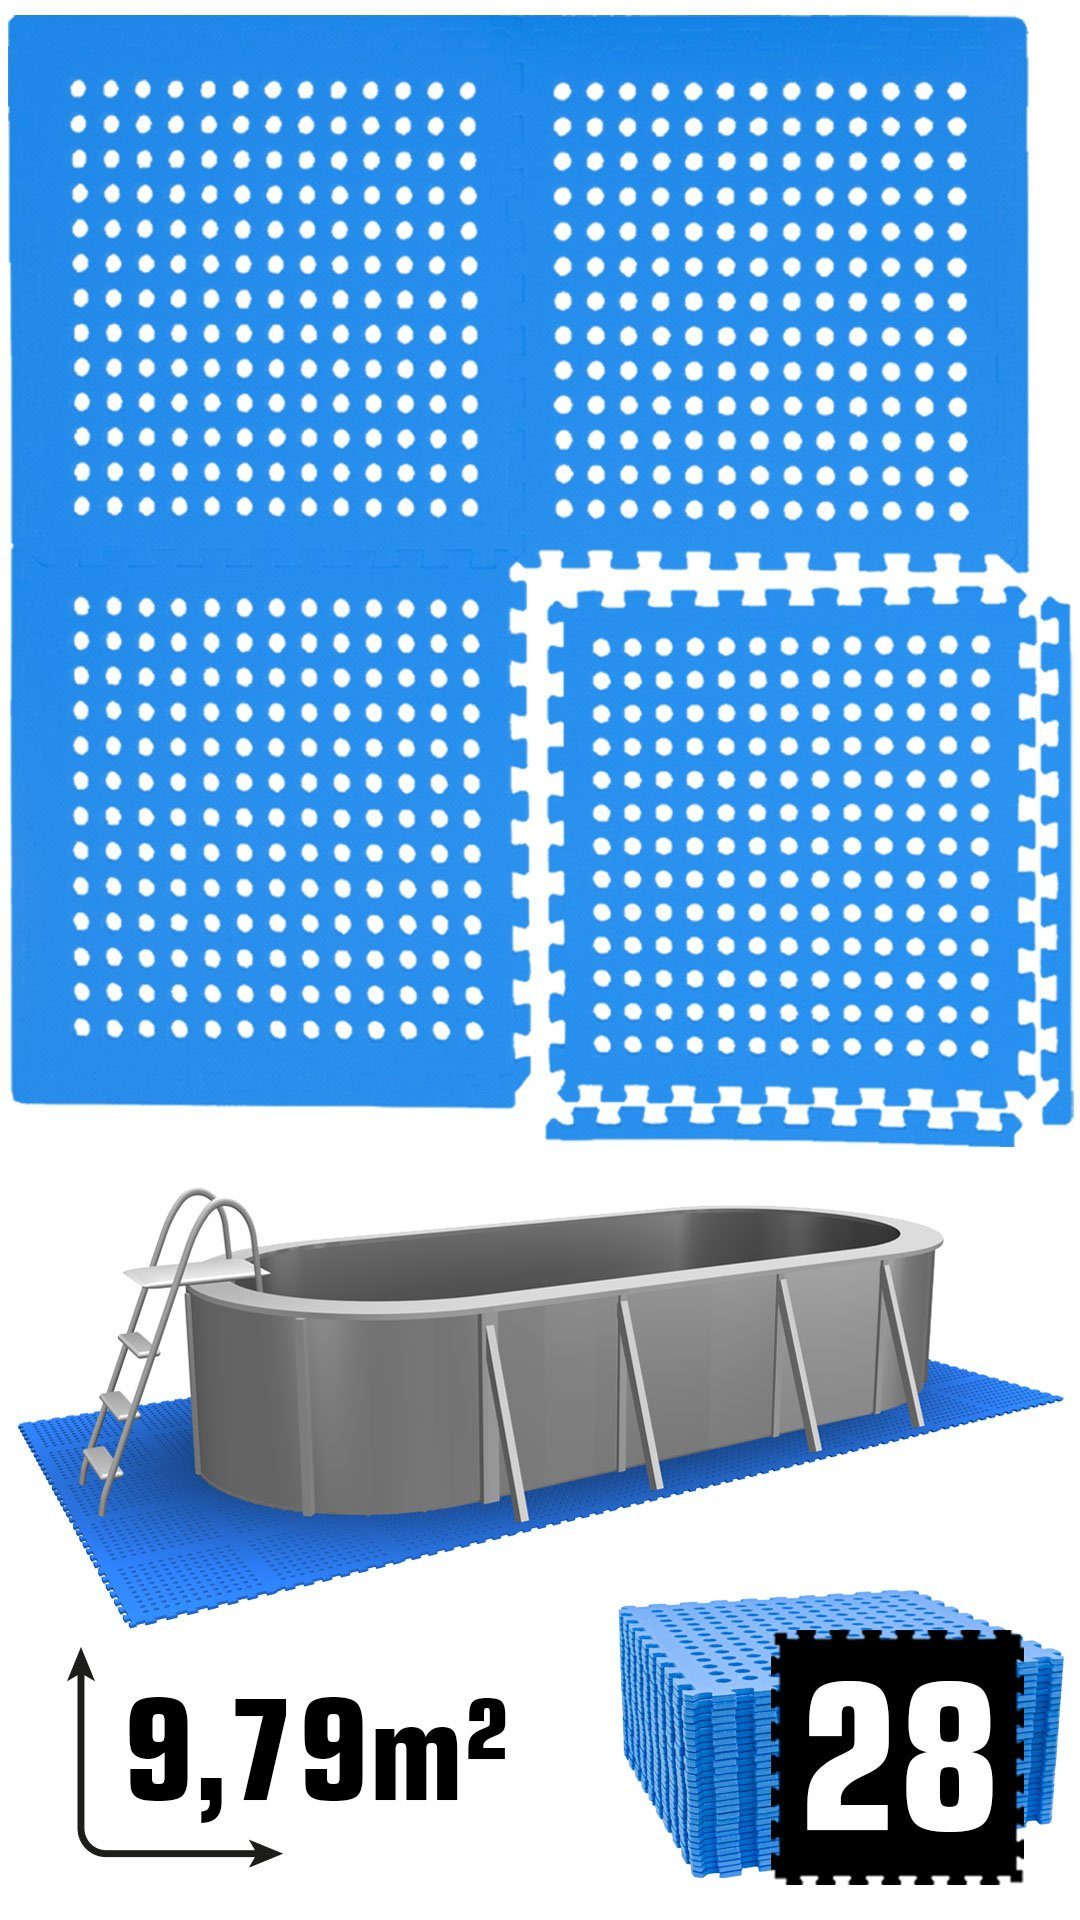 Poolunterlage m² 28 Stecksystem Matten Bodenmatte Set, 62x62 9,8 rutschfest Blau EVA Matte eyepower